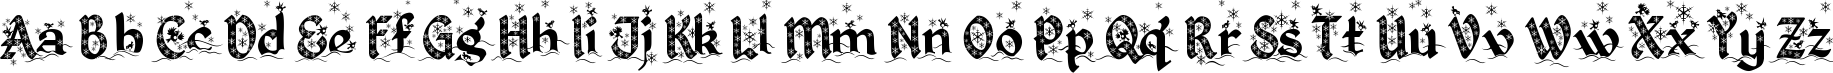 Пример написания английского алфавита шрифтом Kingthings Christmas